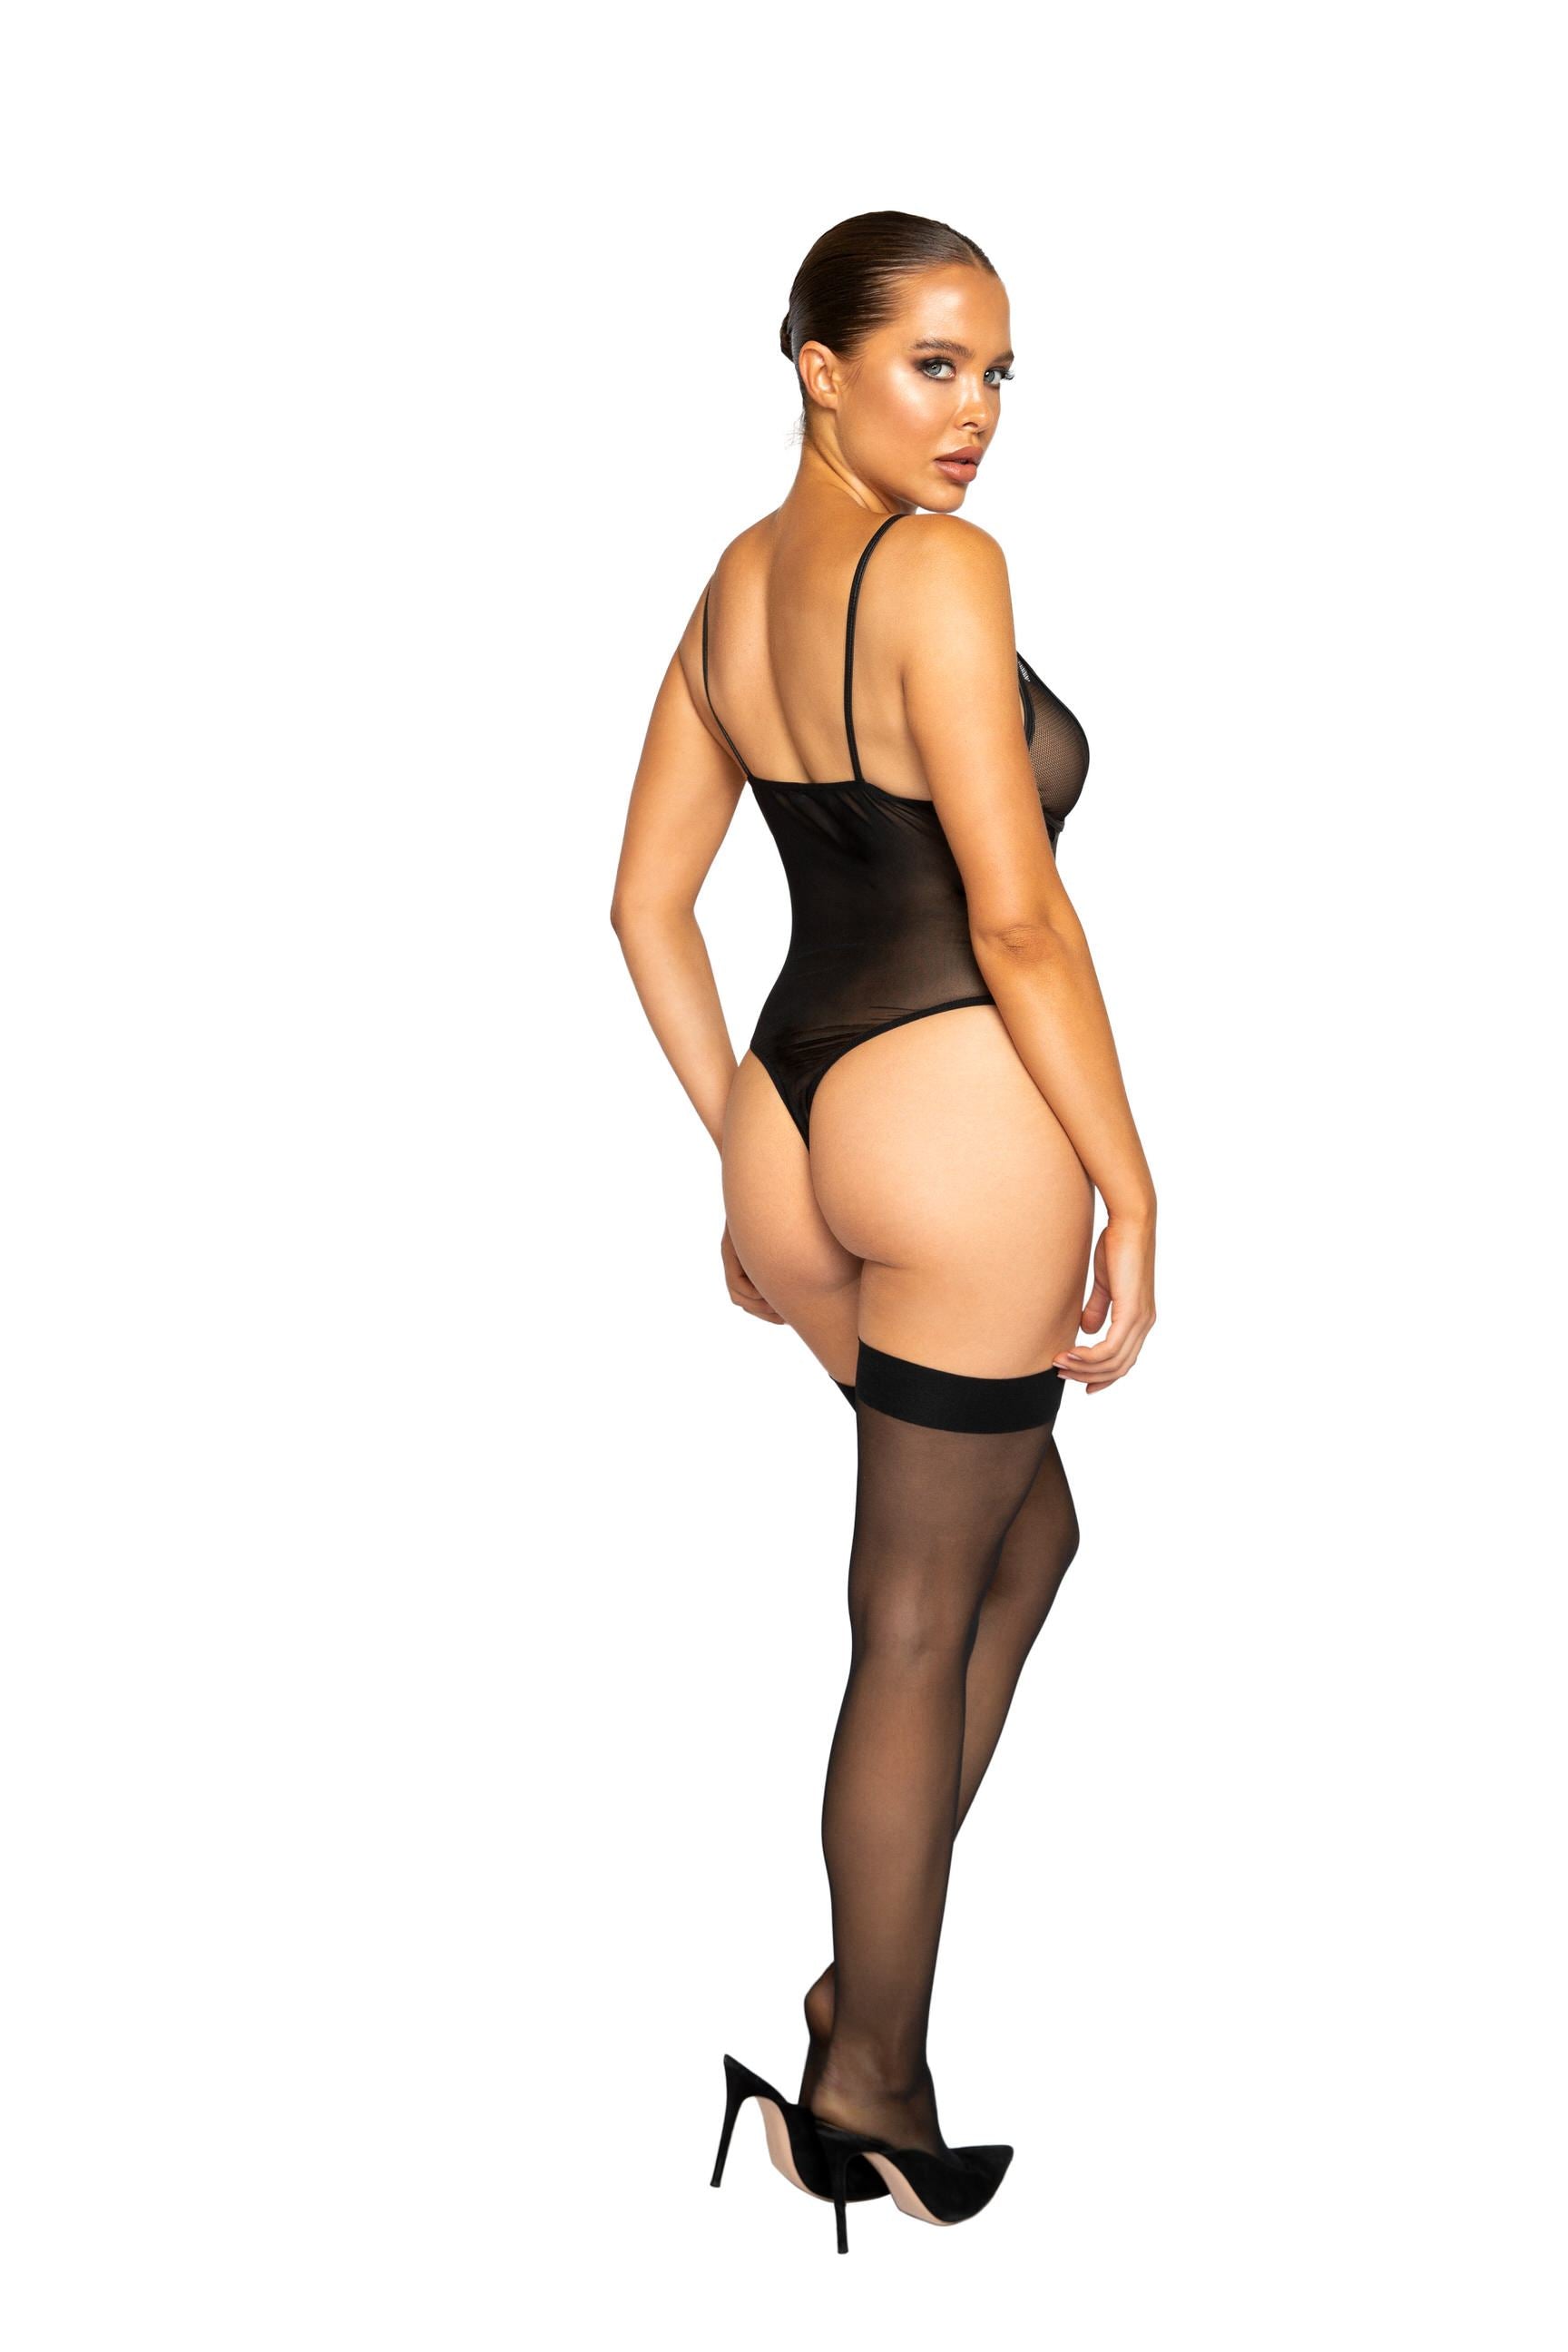 Roma lingerie Small / Black LI324 - Netted Matte Bodysuit with Garter Set